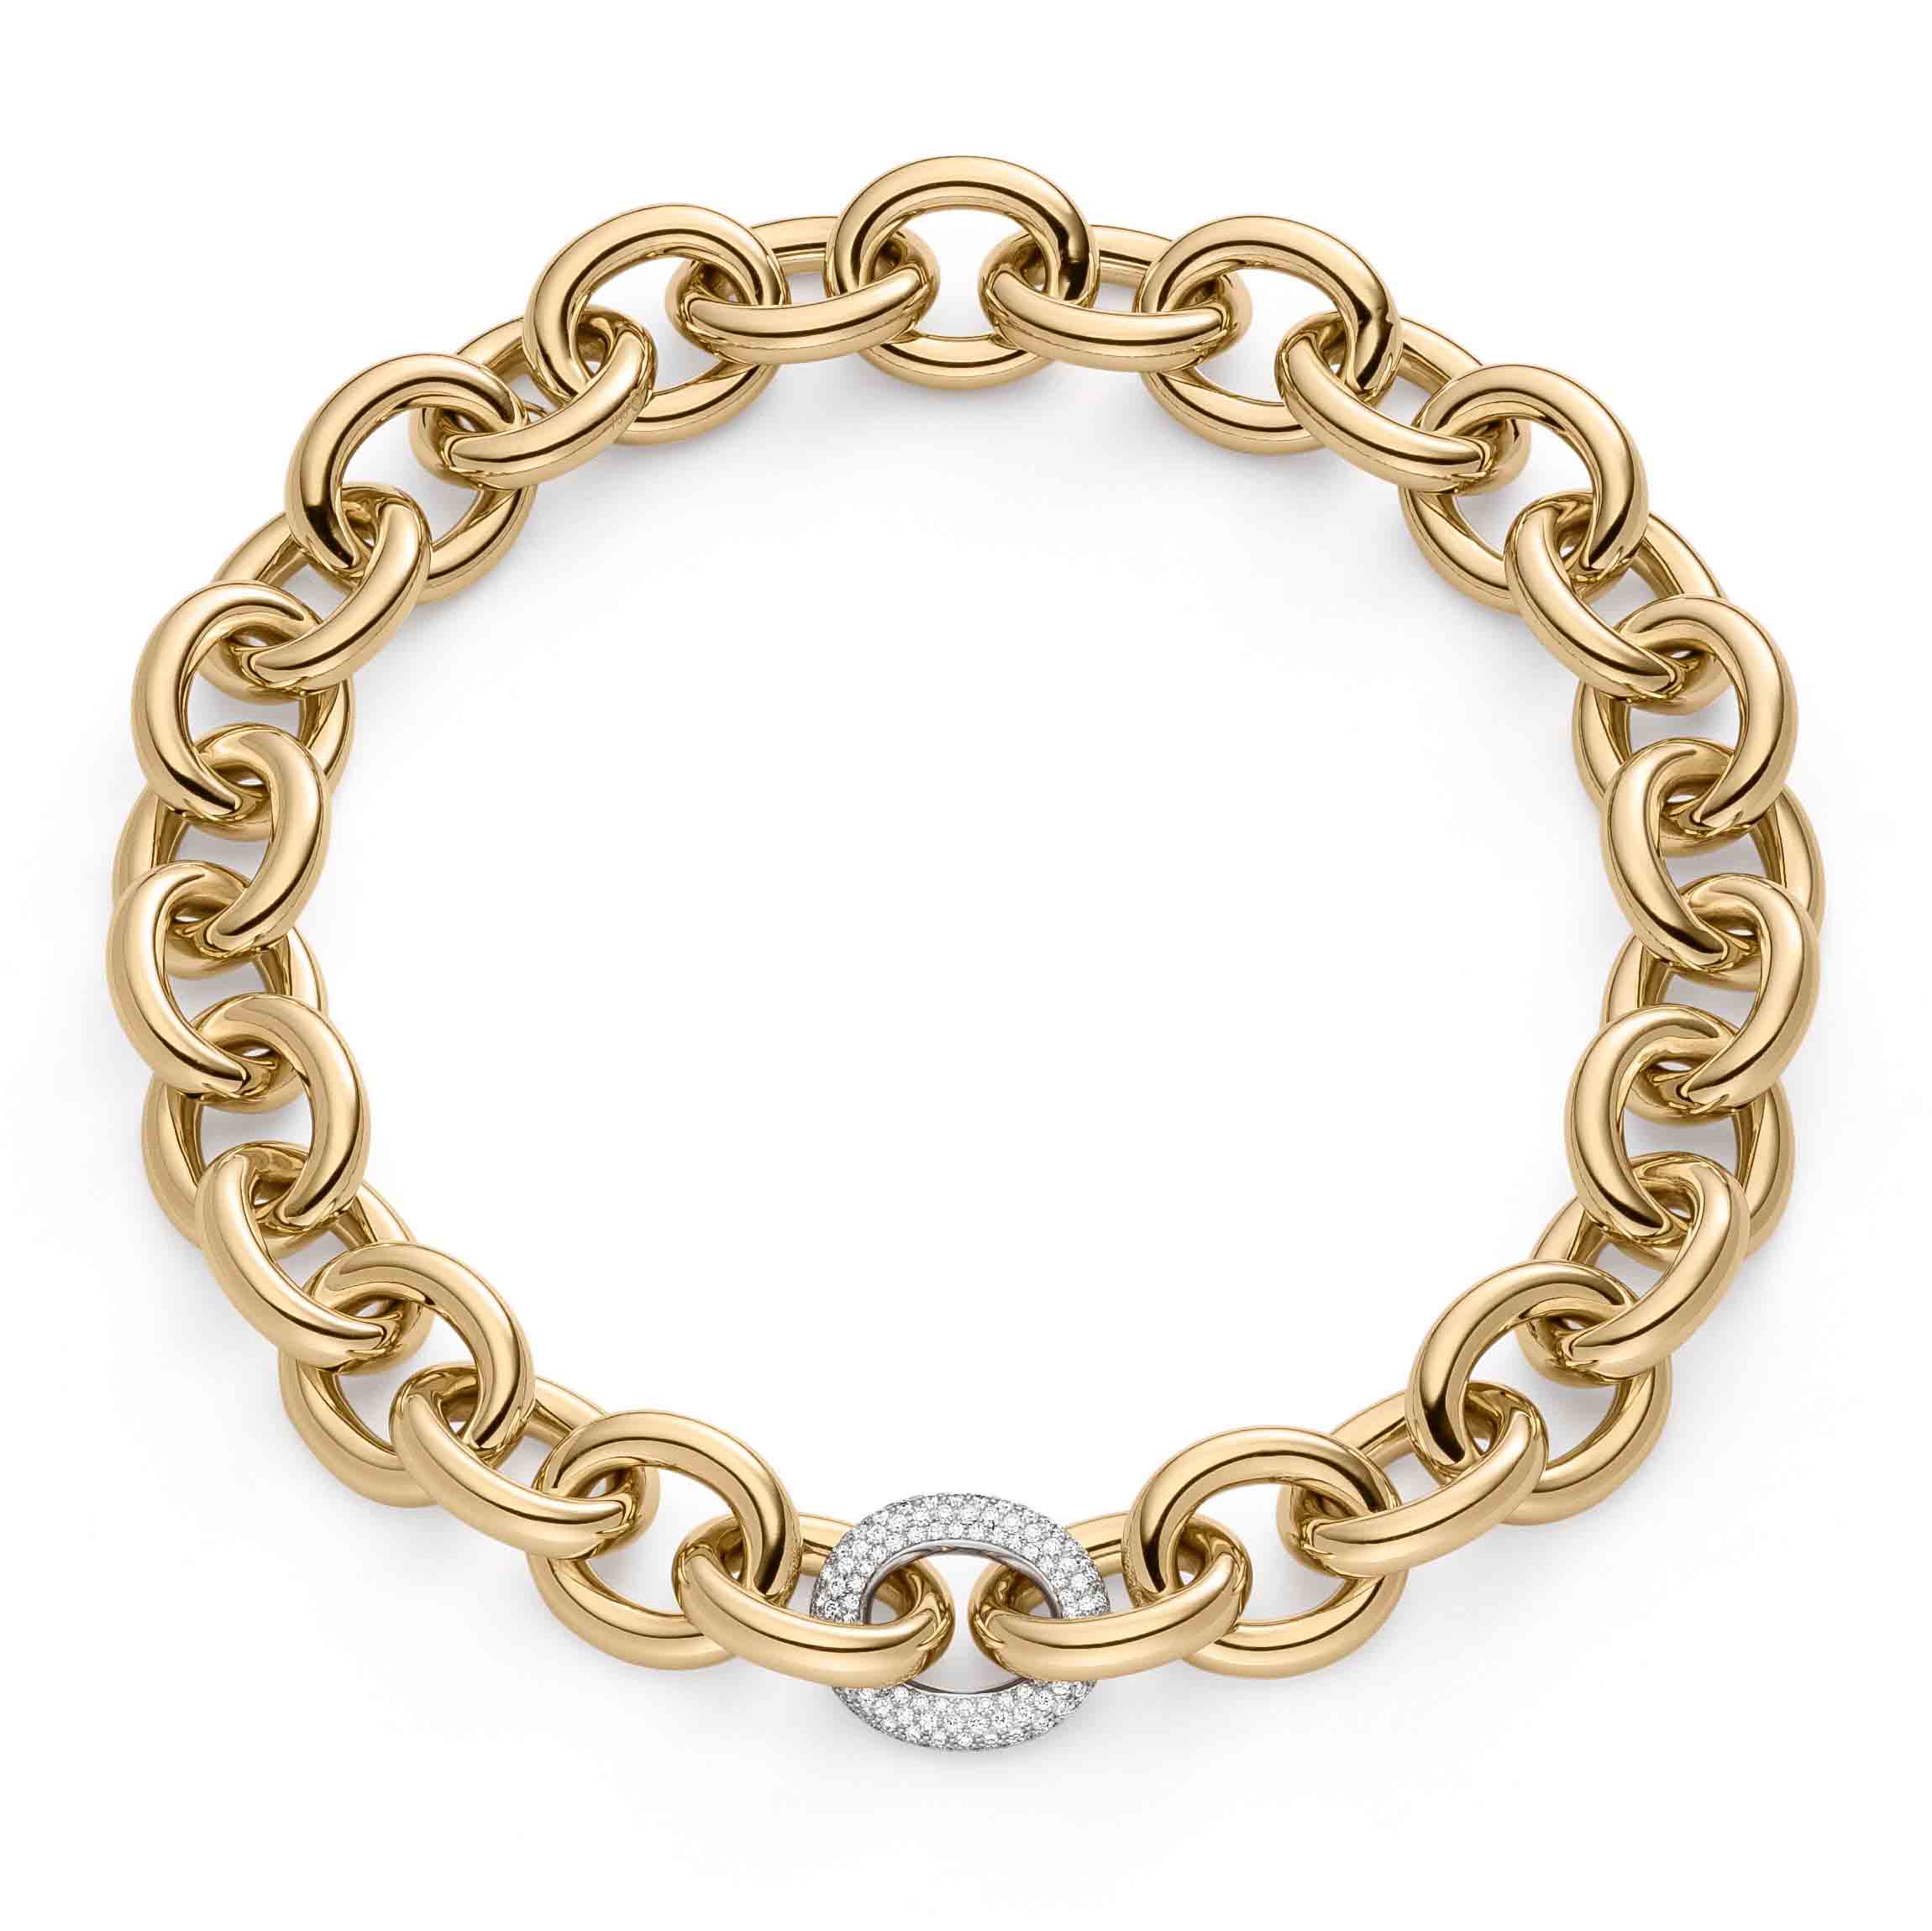 Velkoobchodní dodavatelé OEM/ODM šperků stříbrných náramků OEM šperků pokovených 18k zlatem